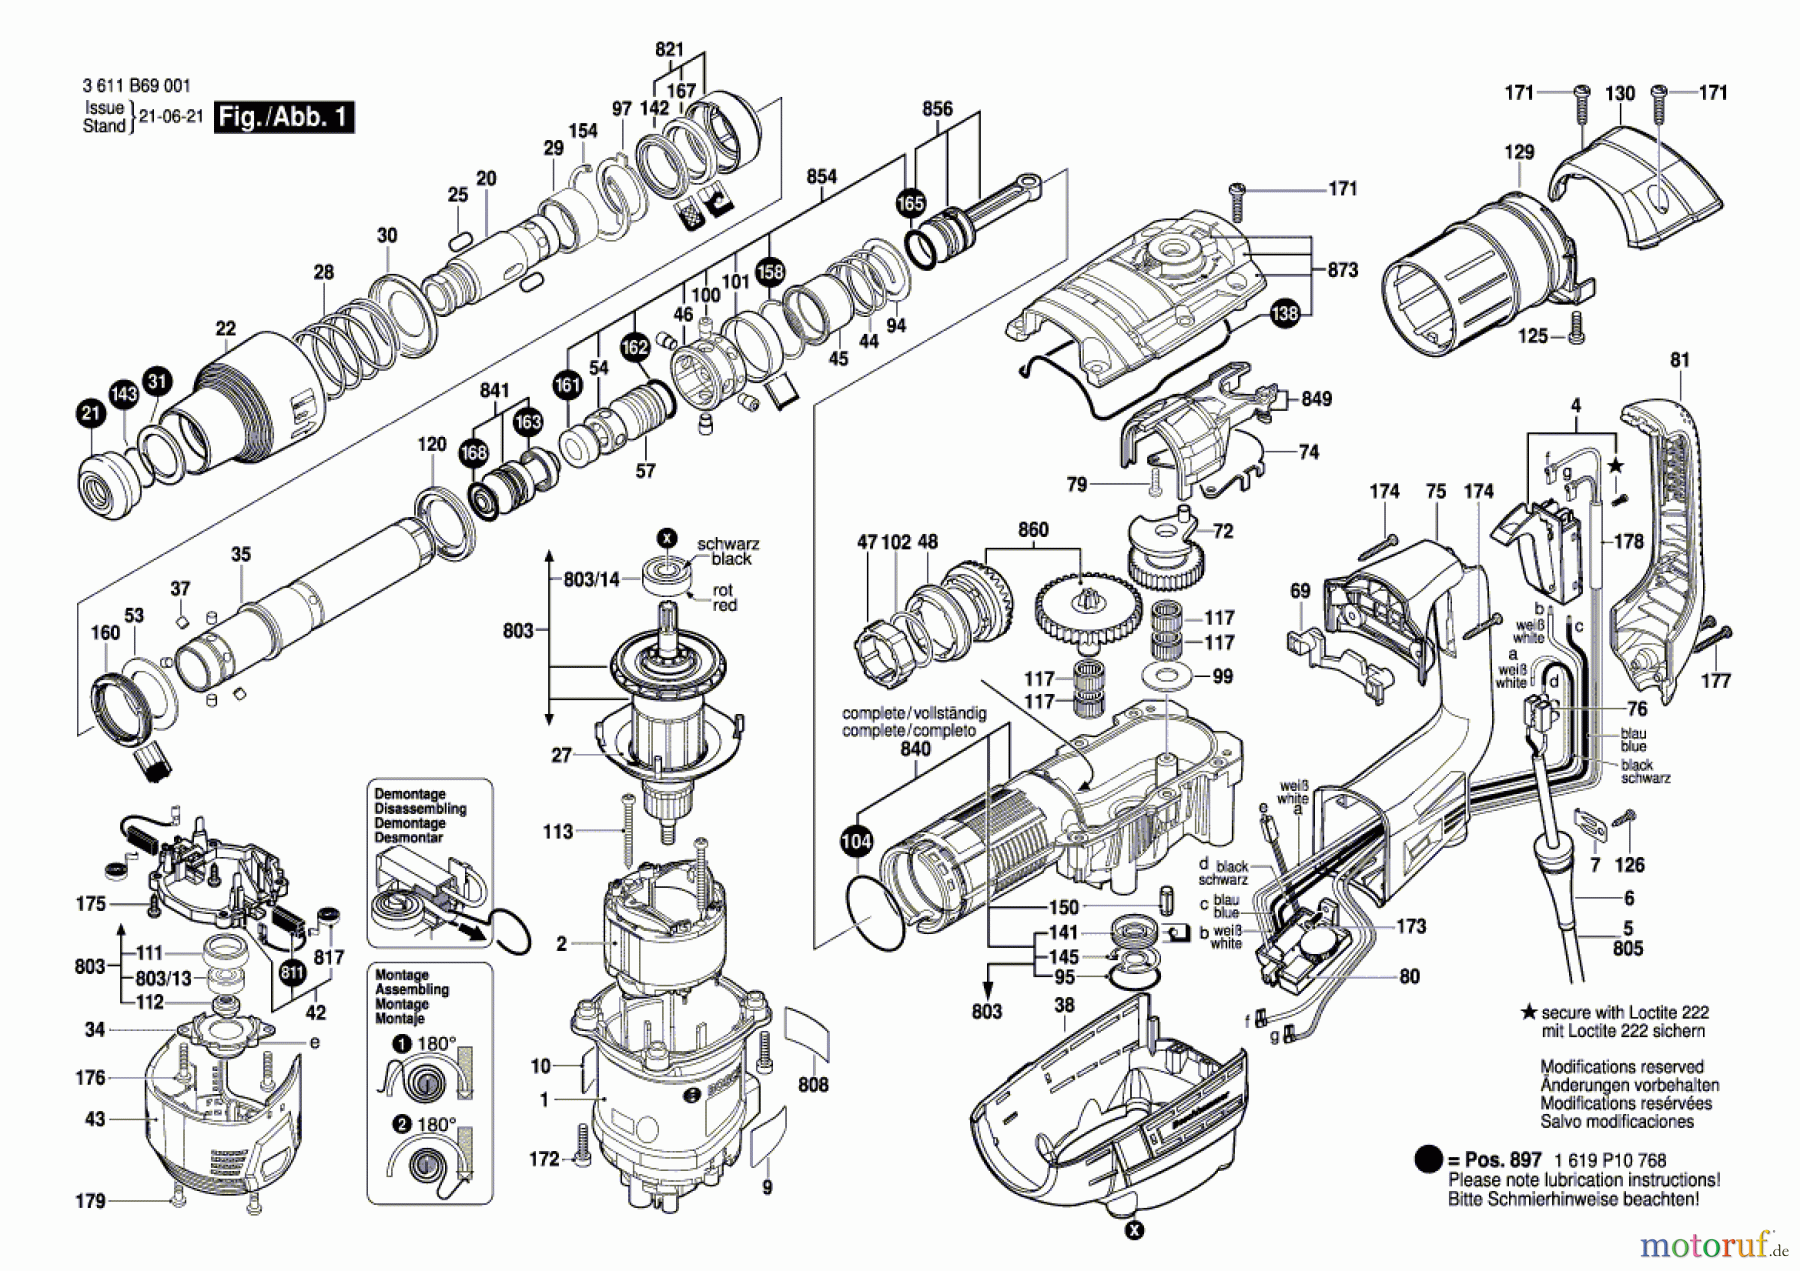  Bosch Werkzeug Bohrhammer GBH 5-40 D Seite 1